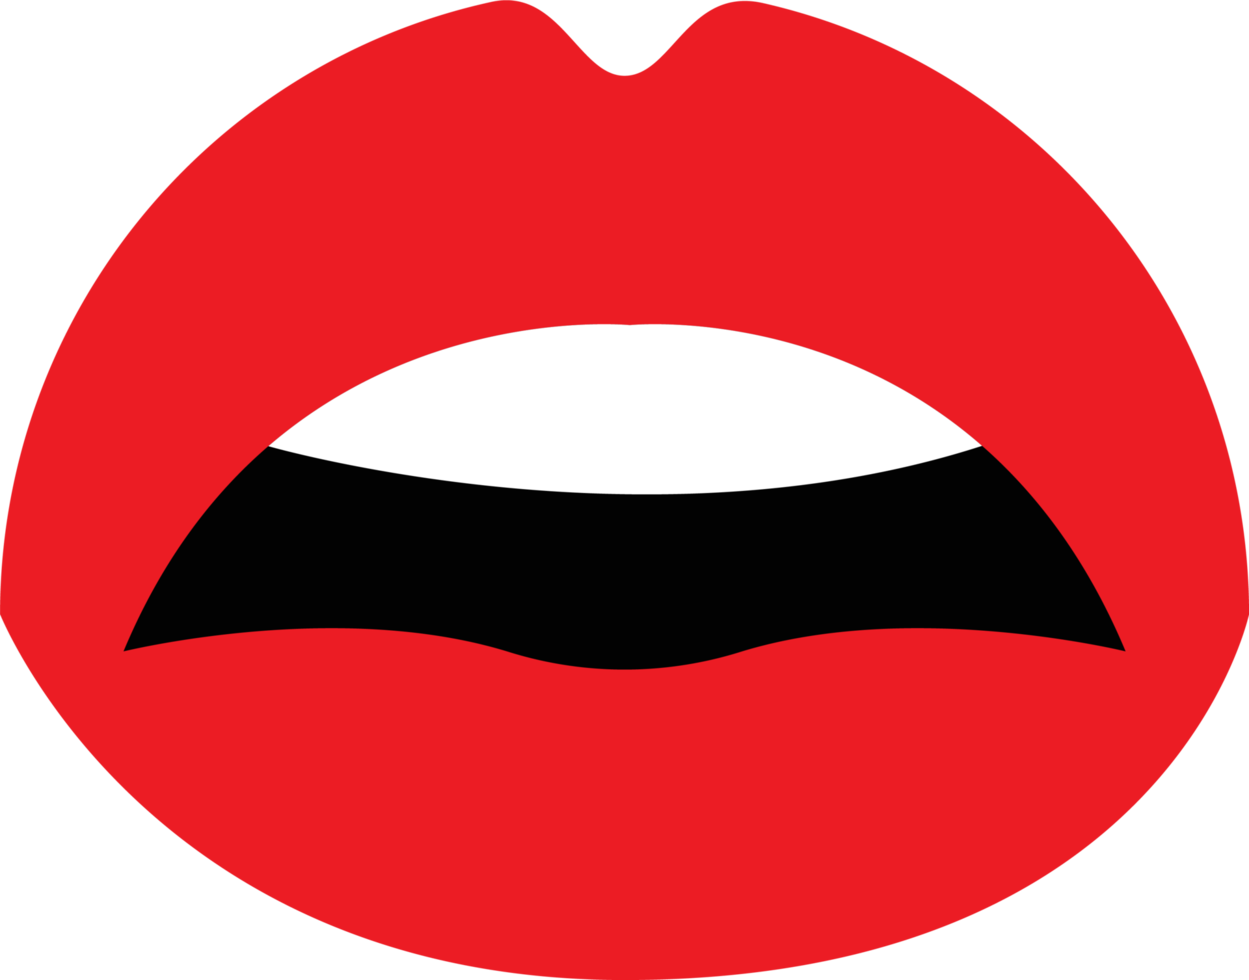 vrouw rode lippen clipart ontwerp illustratie png